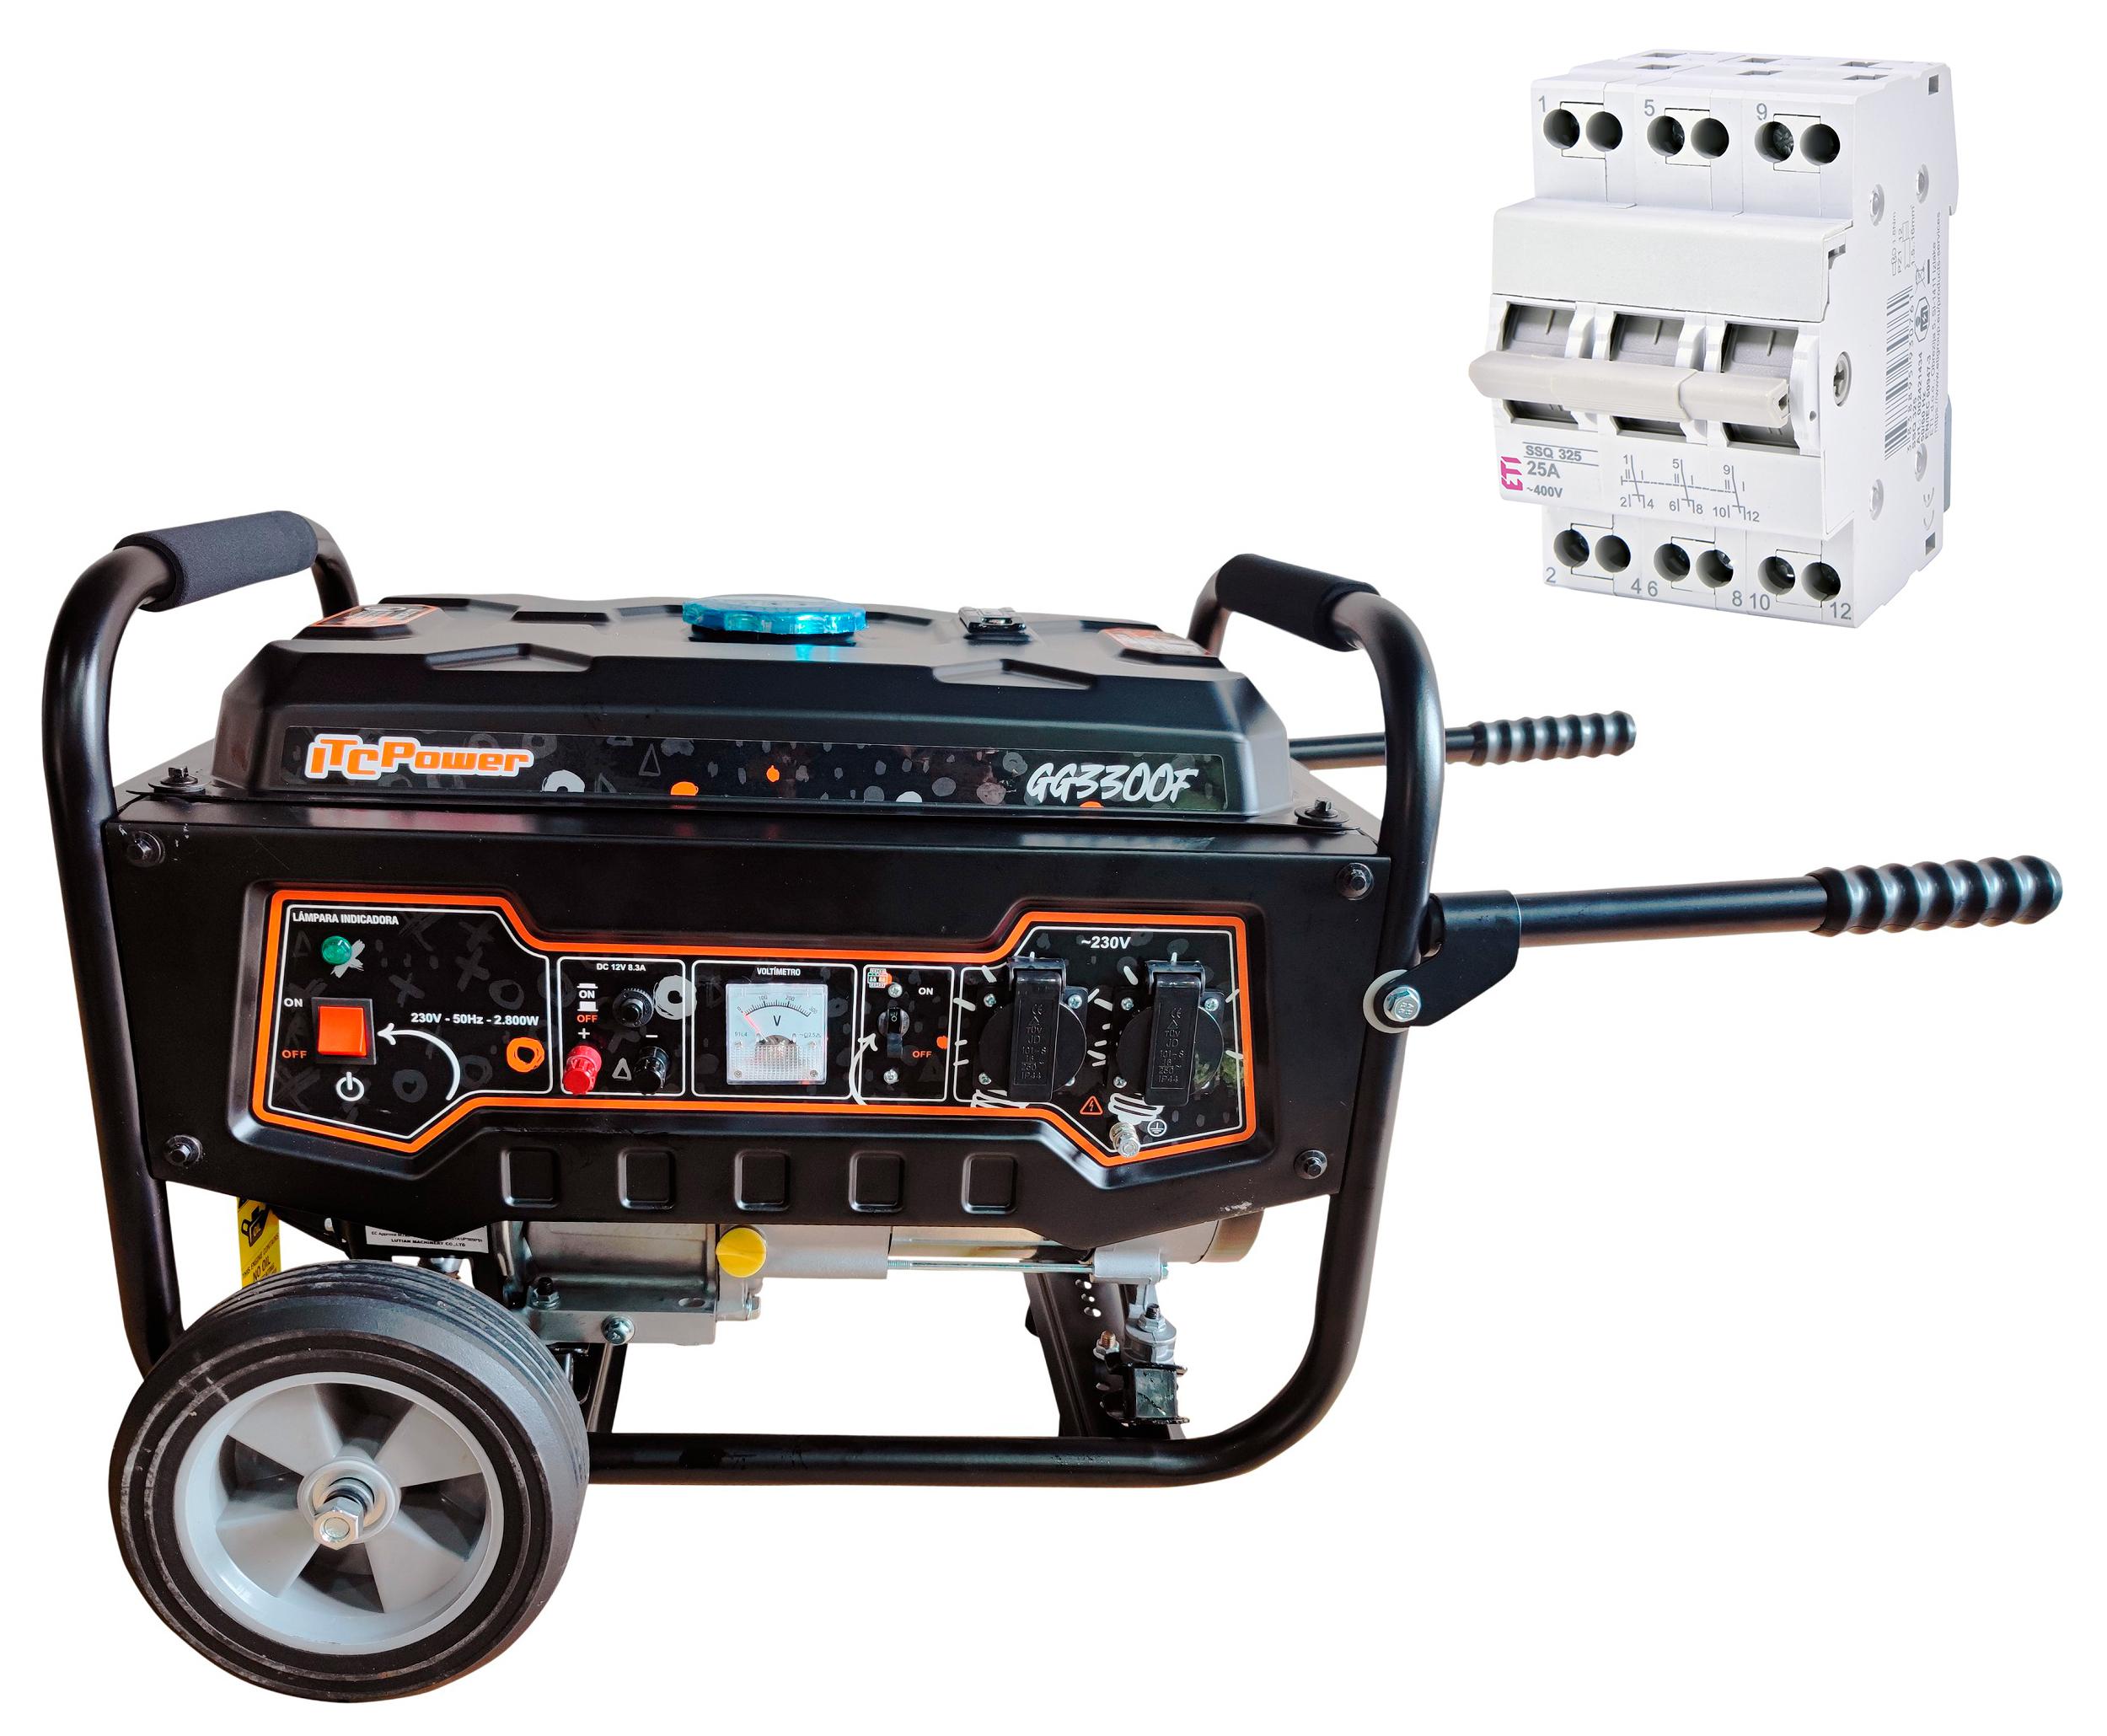 Отзывы генератор ITC Power GG3300F + переключатель трехпозиционный ETI SSQ 340 (002421435)